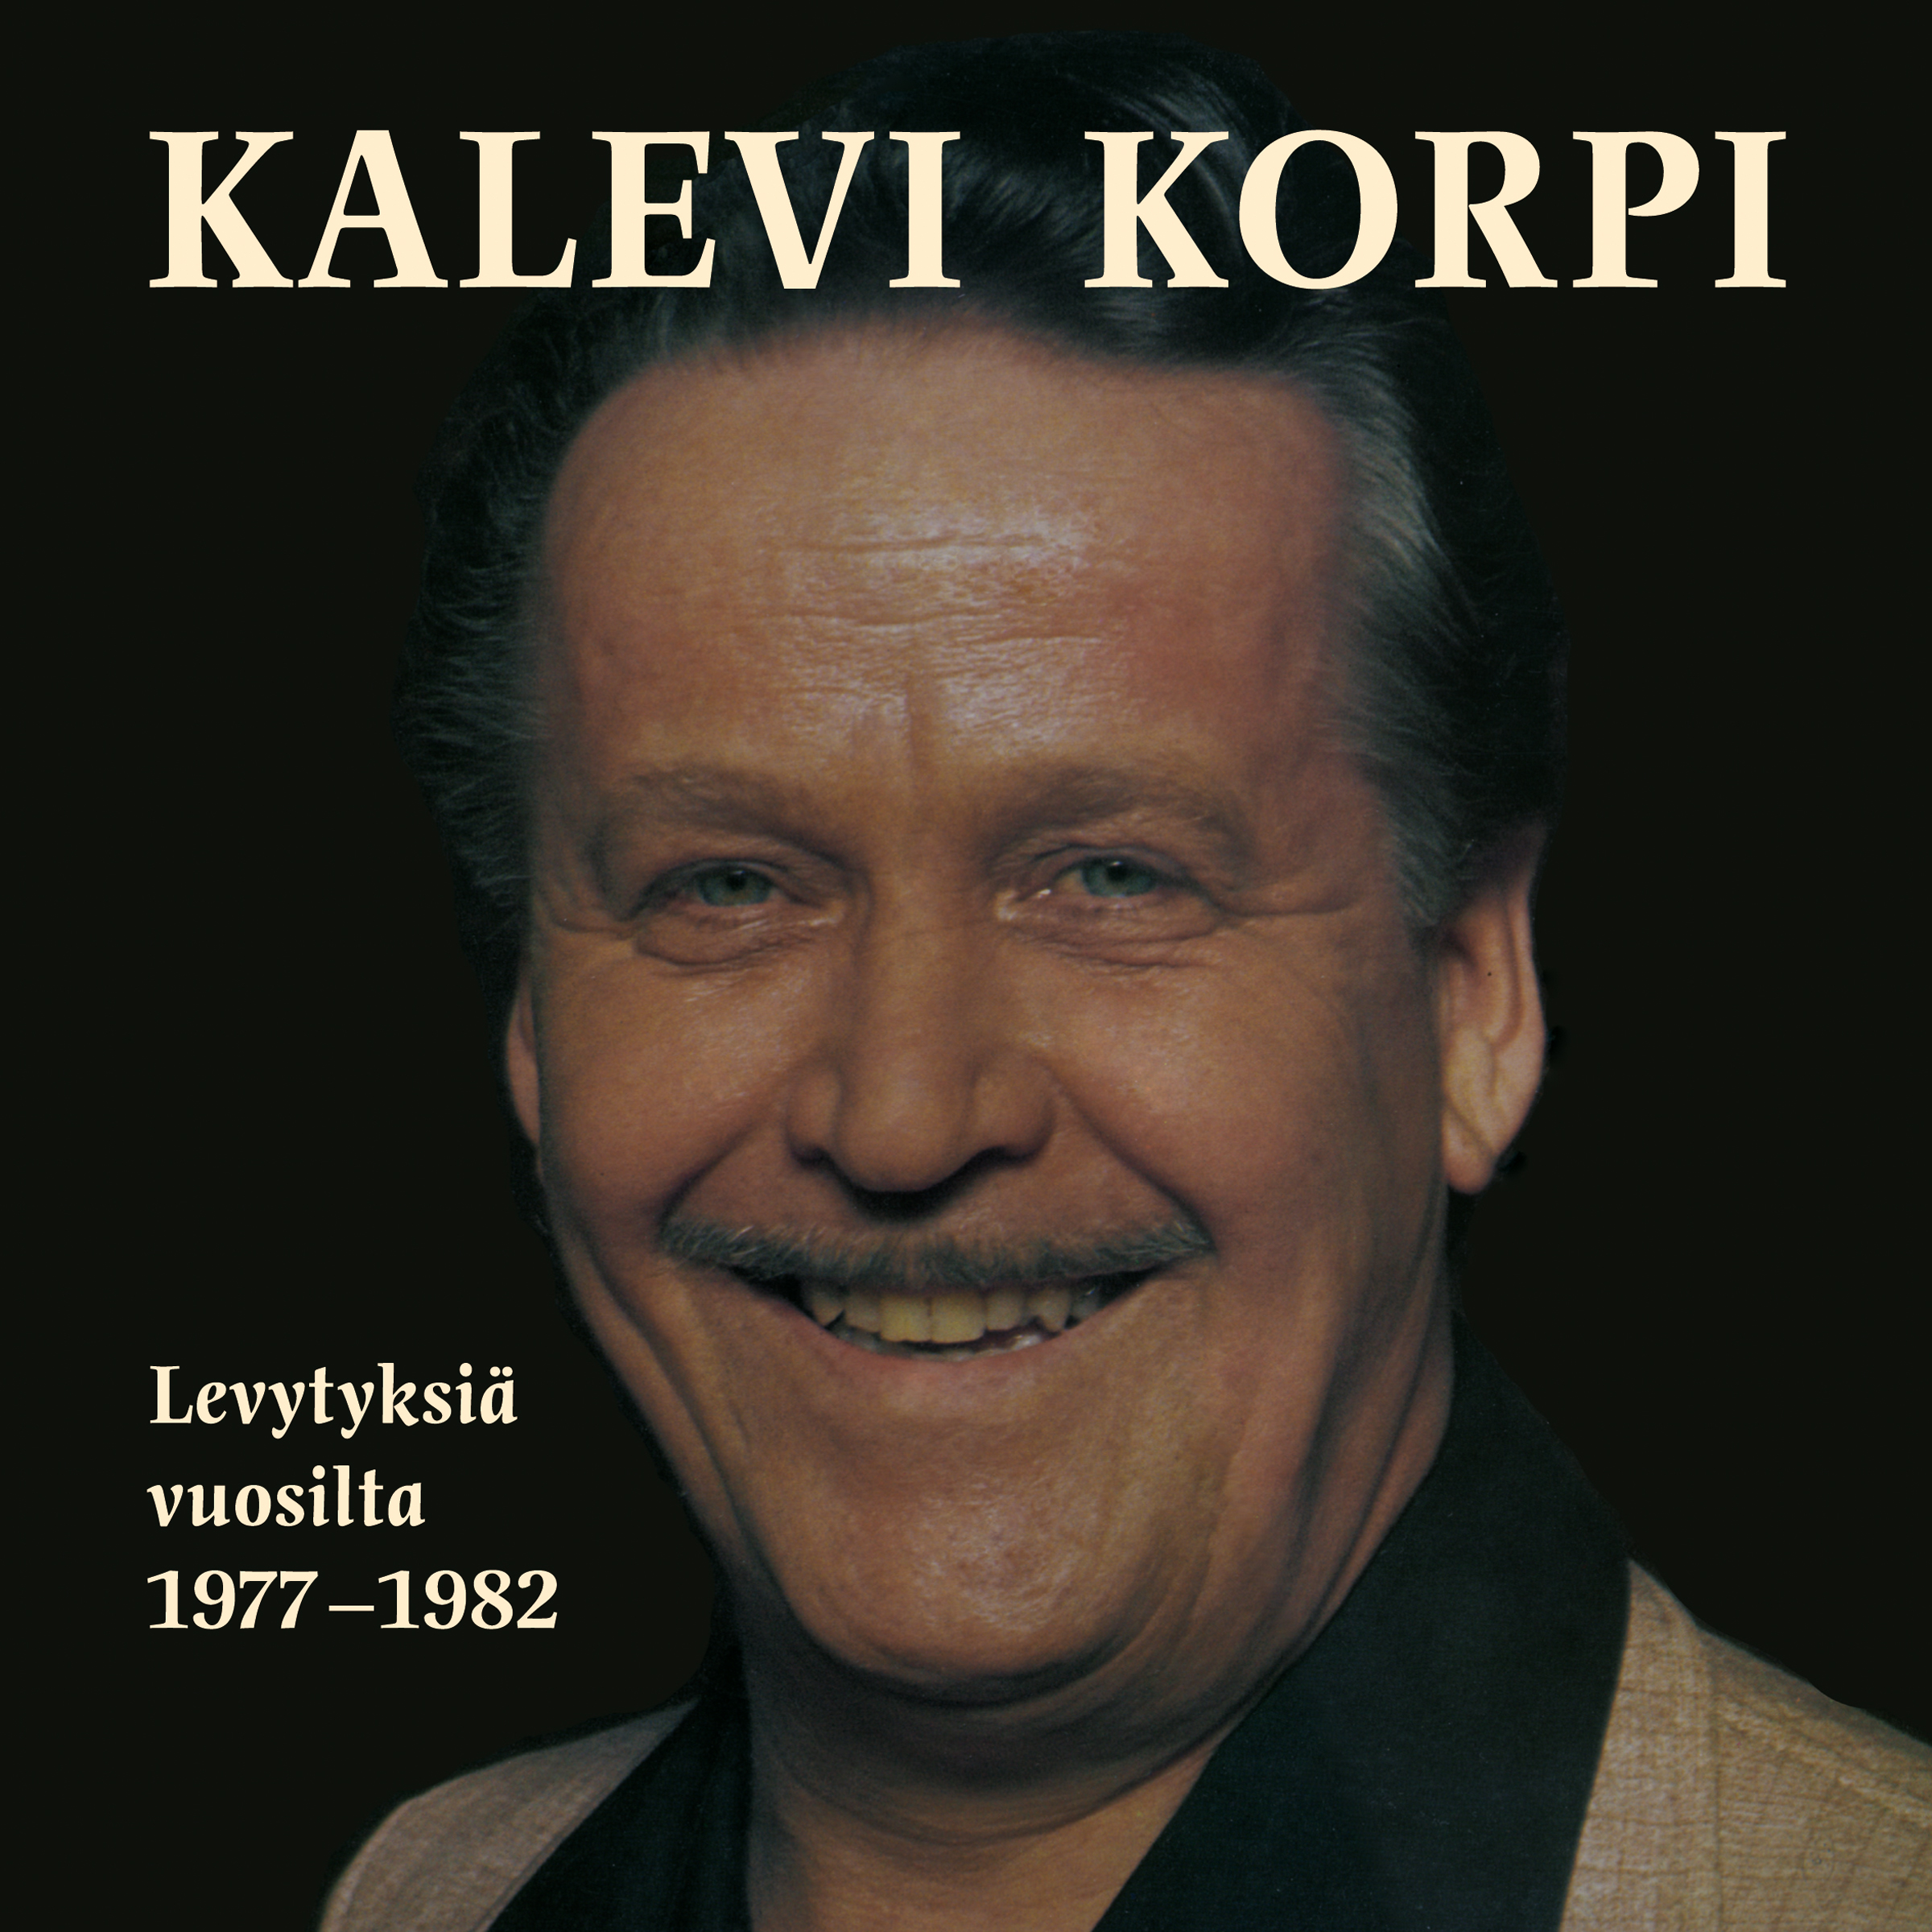 Kalevi Korpi - Levytyksi  vuosilta 1977-1982 - CD